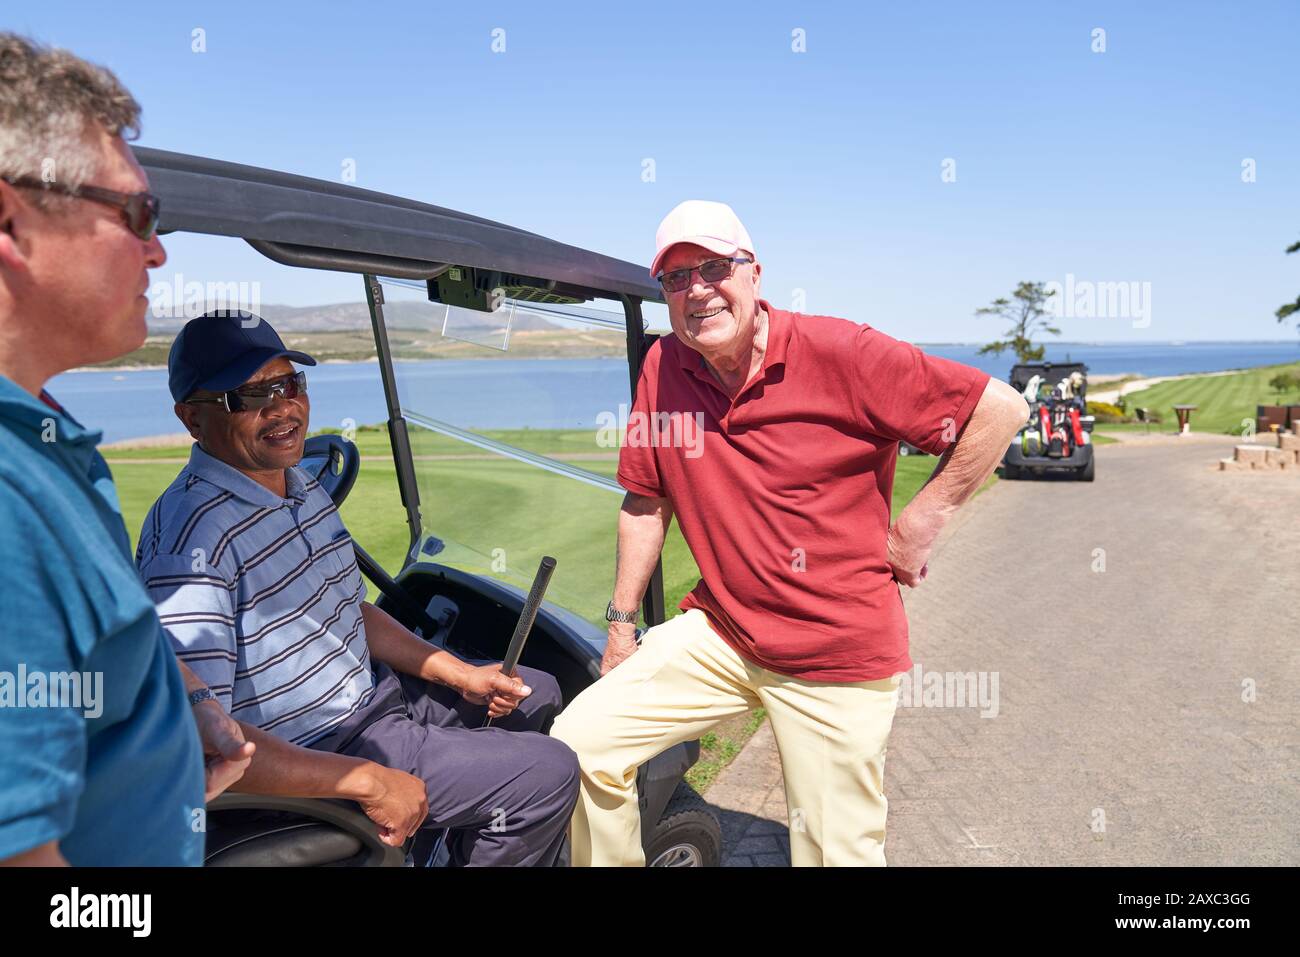 Amici golfer maschio felici che parlano al golf cart sul campo soleggiato Foto Stock